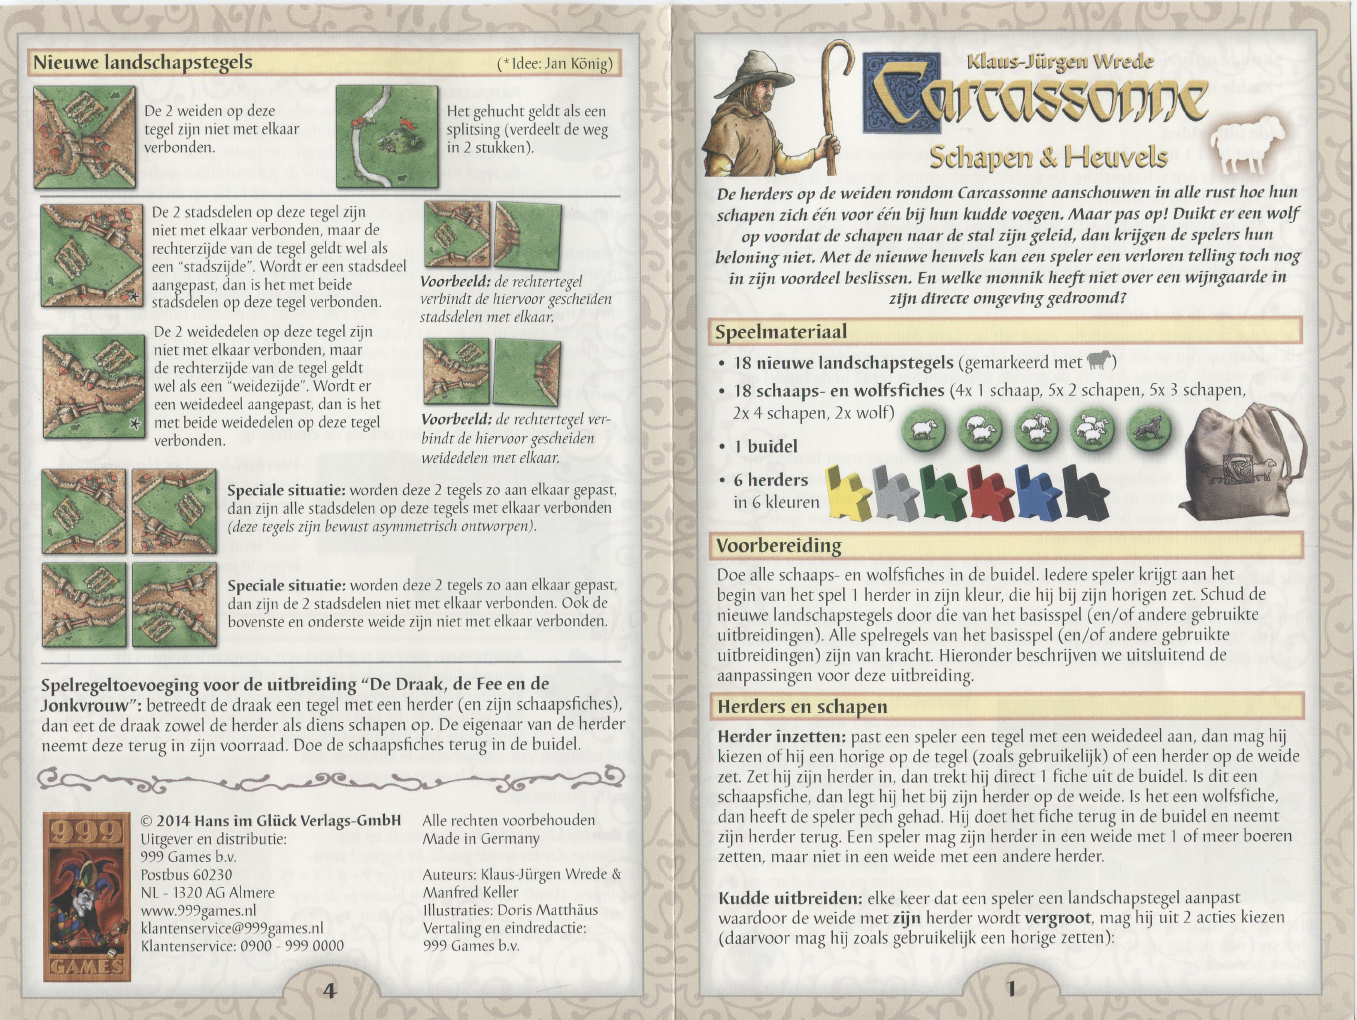 Ventileren Doe mijn best Onschuld Handleiding 999 games Carcassonne - Schapen en Heuvels (pagina 1 van 2)  (Nederlands)